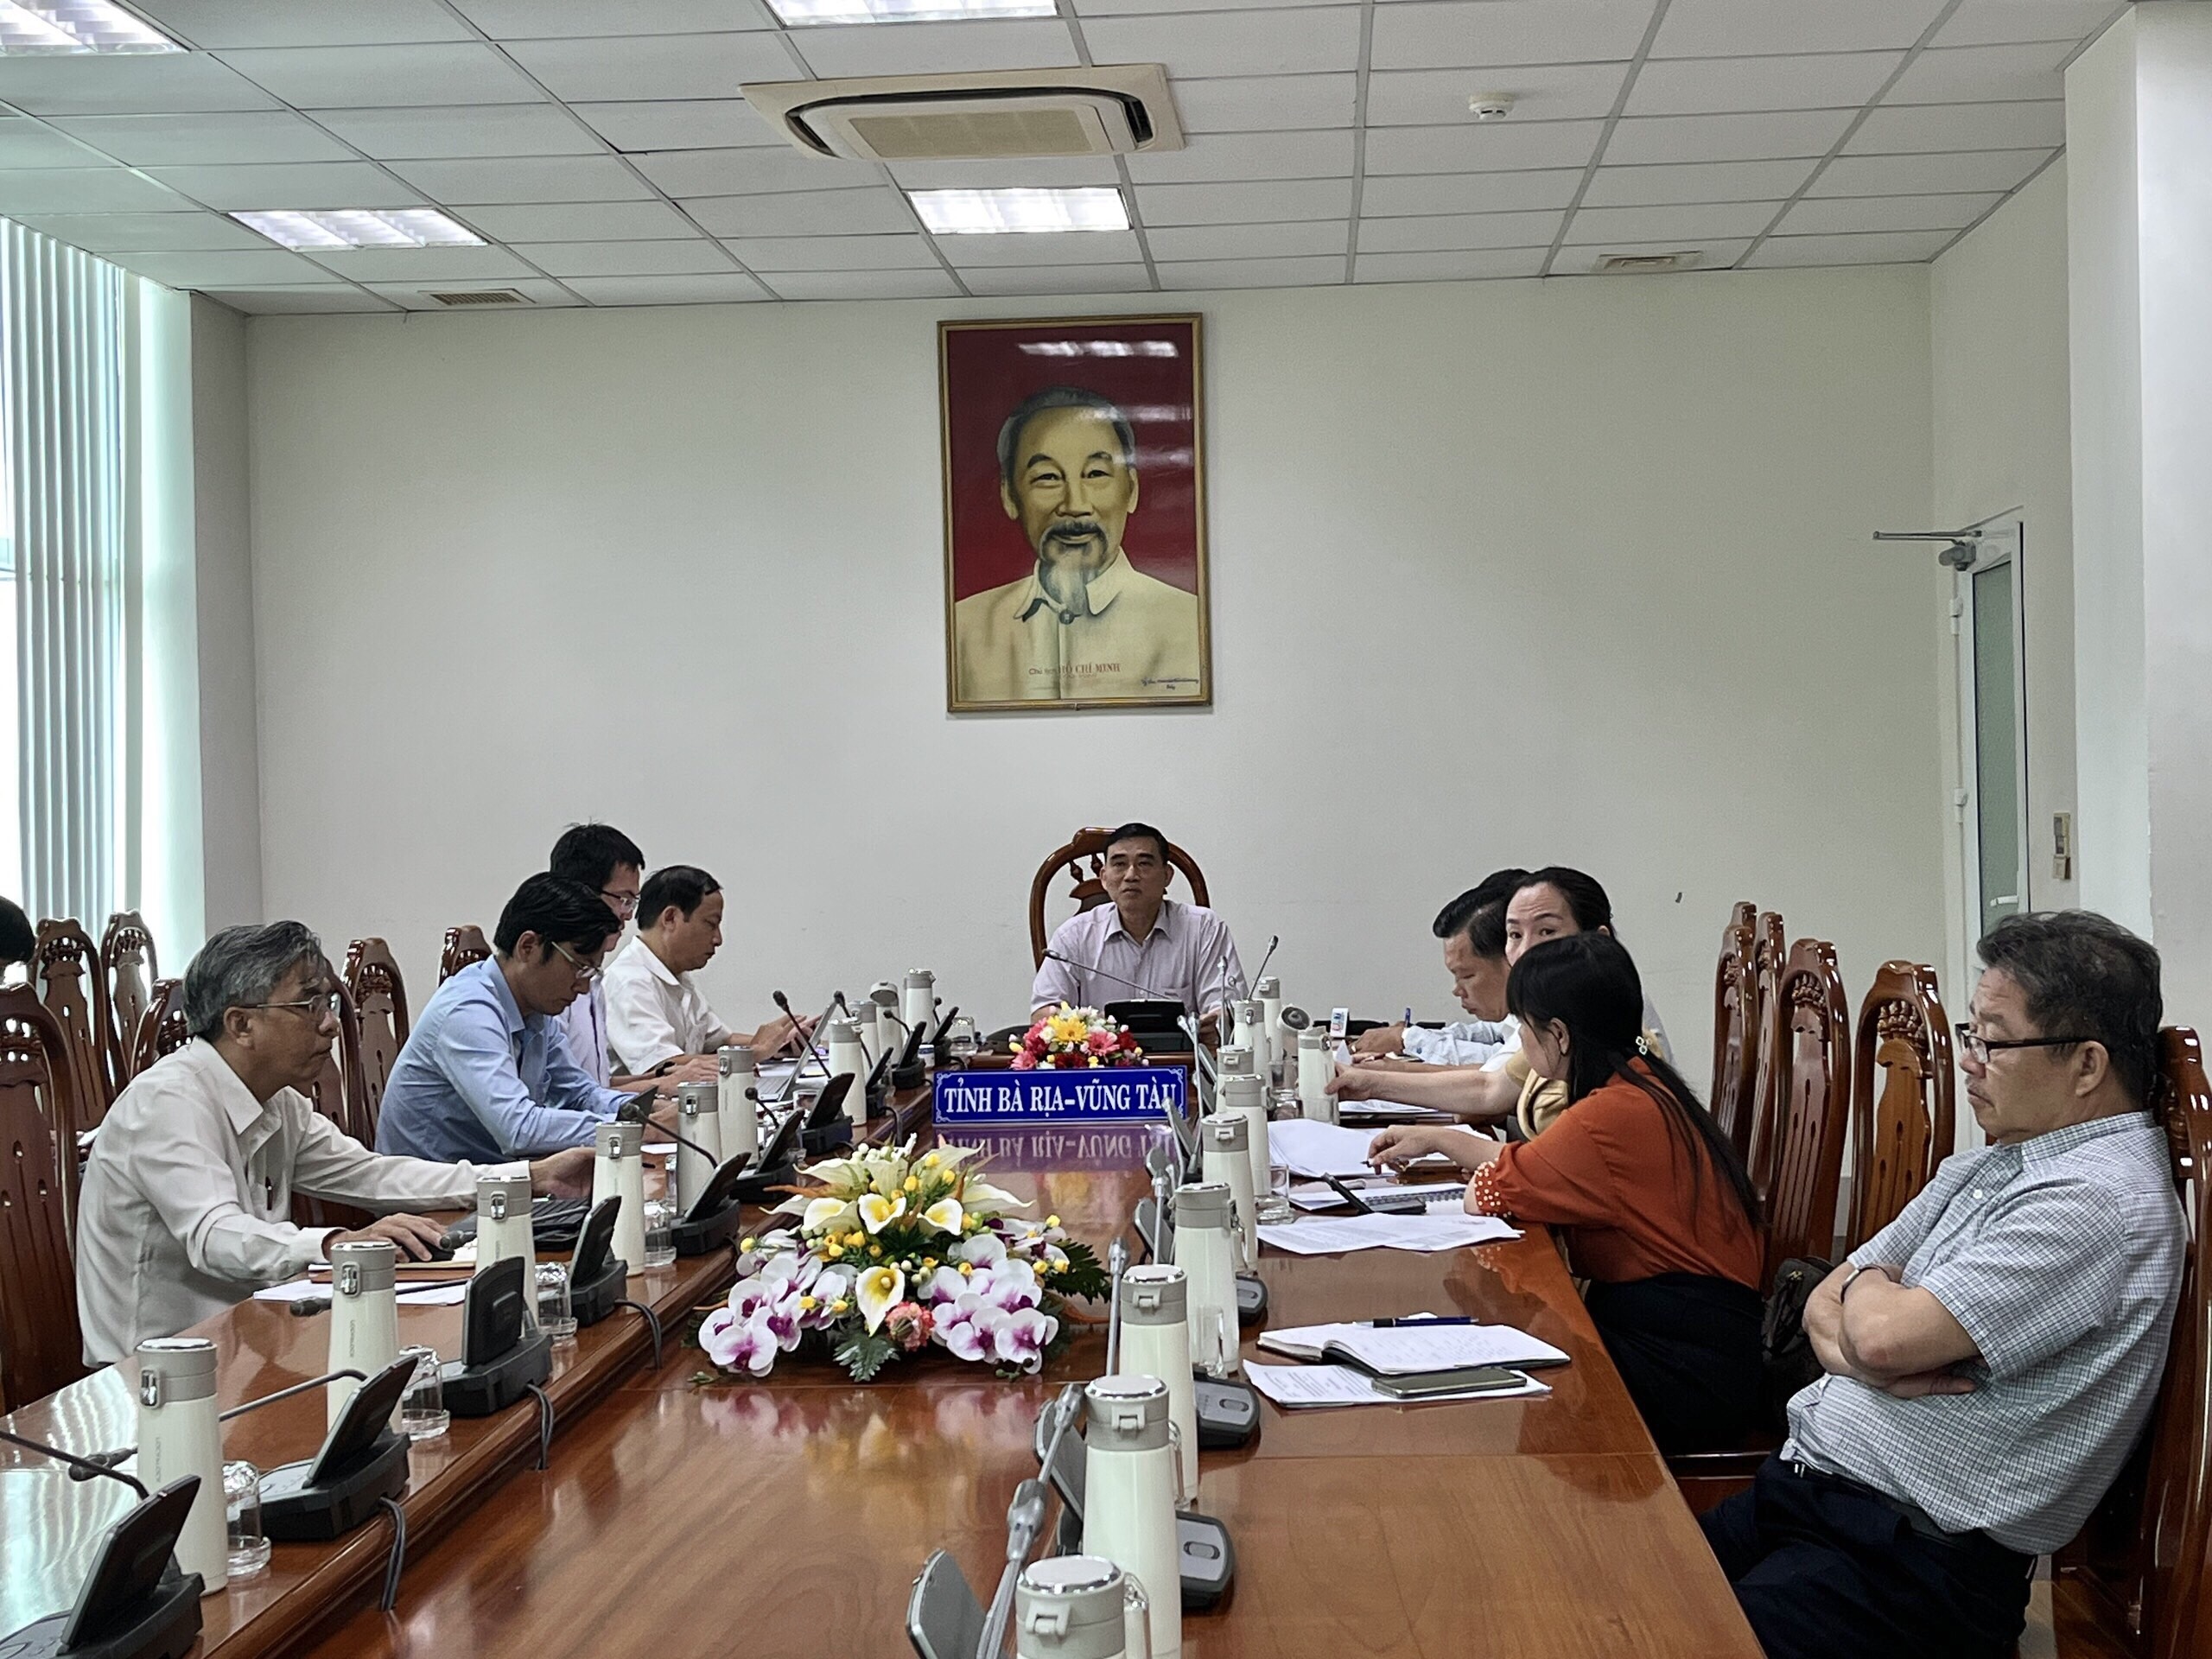 Giám đốc Sở GT-VT Trần Thượng Chí chủ trì buổi làm việc tại điểm cầu Bà Rịa-Vũng Tàu.